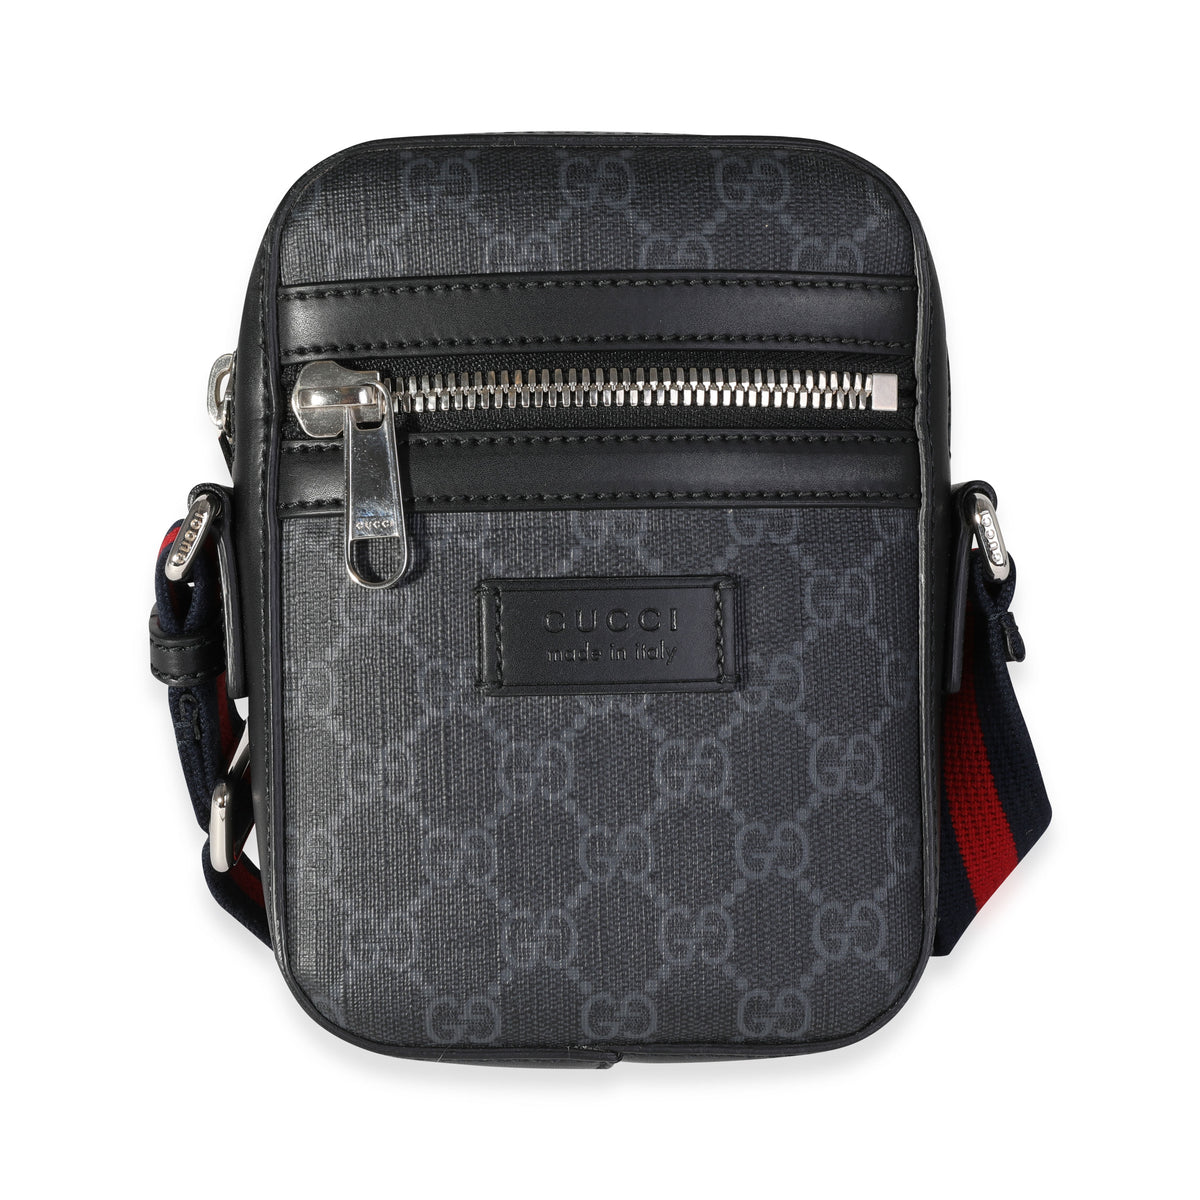 Gucci Black GG Supreme and Web Messenger Bag